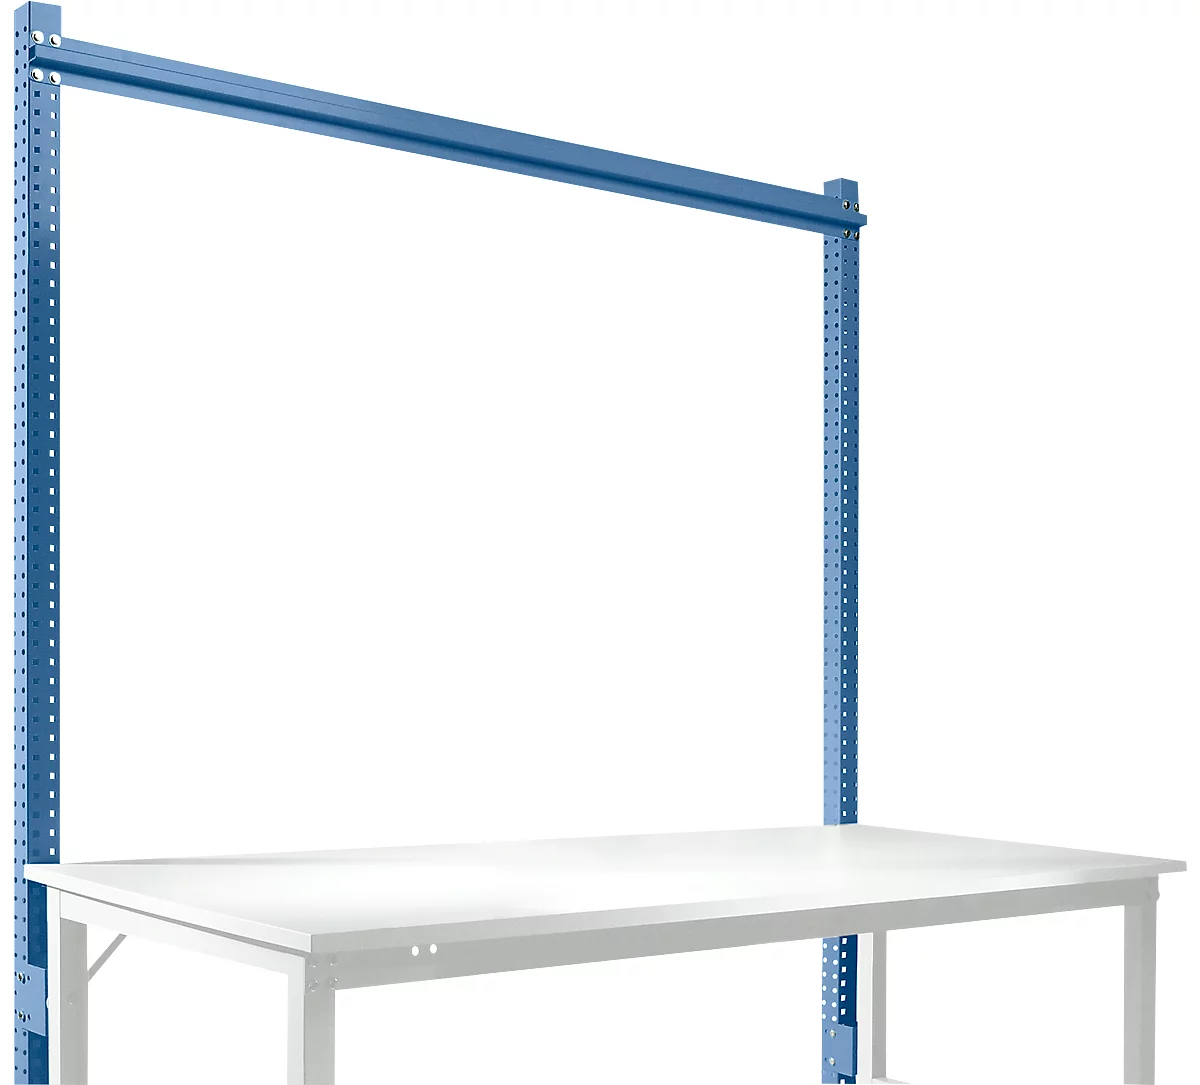 Estructura pórtica adicional, Mesa básica SPEZIAL sistema mesa de trabajo/banco de trabajo UNIVERSAL/PROFI, 1750 mm, azul brillante